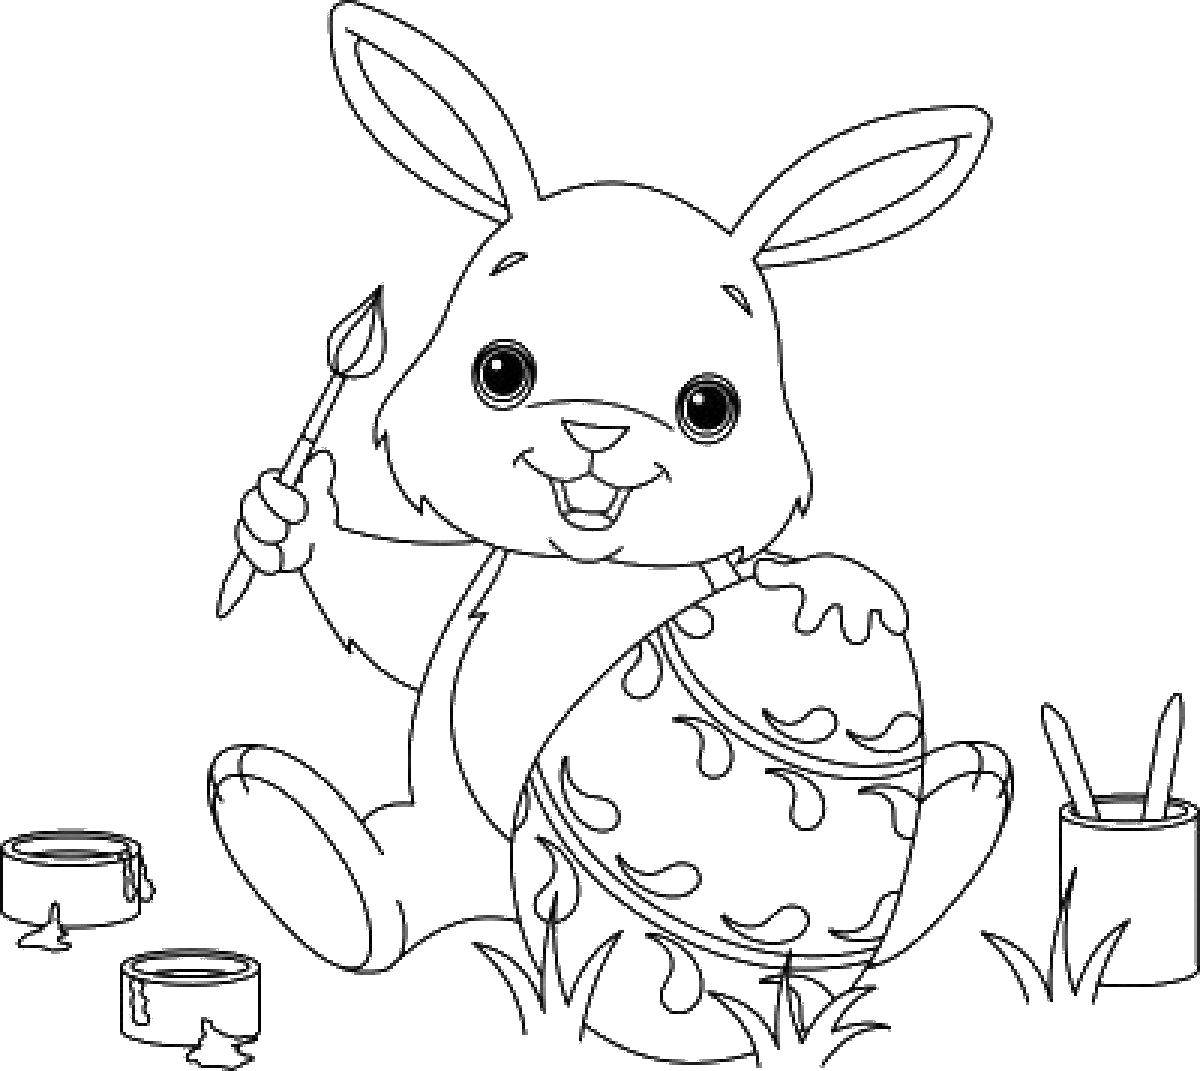 Название: Раскраска Кролик раскрашивает яйцо узором. Категория: кролик. Теги: кролик, заяц.